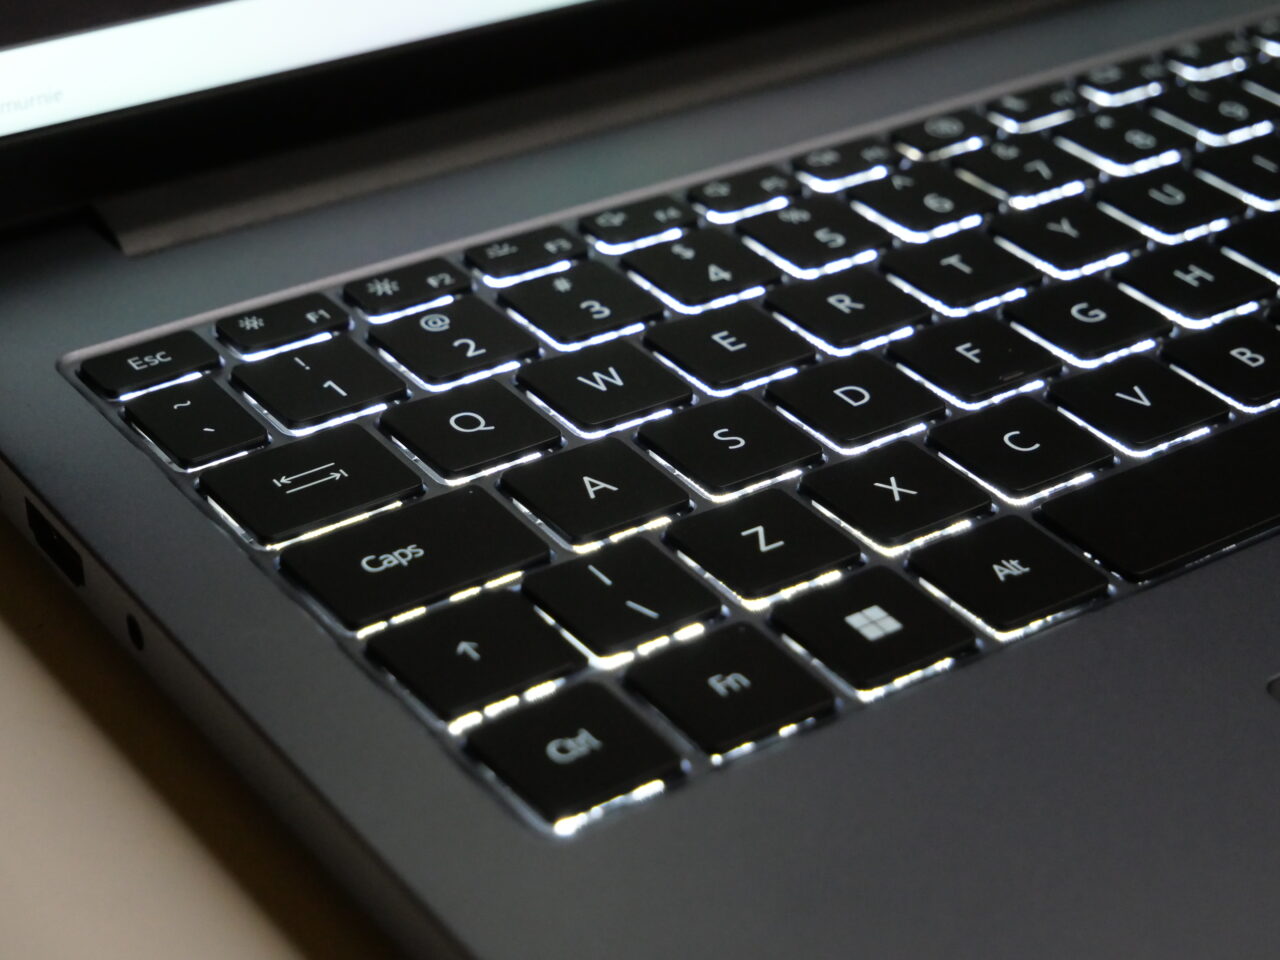 akcesoria do laptopów - klawiatura w laptopie